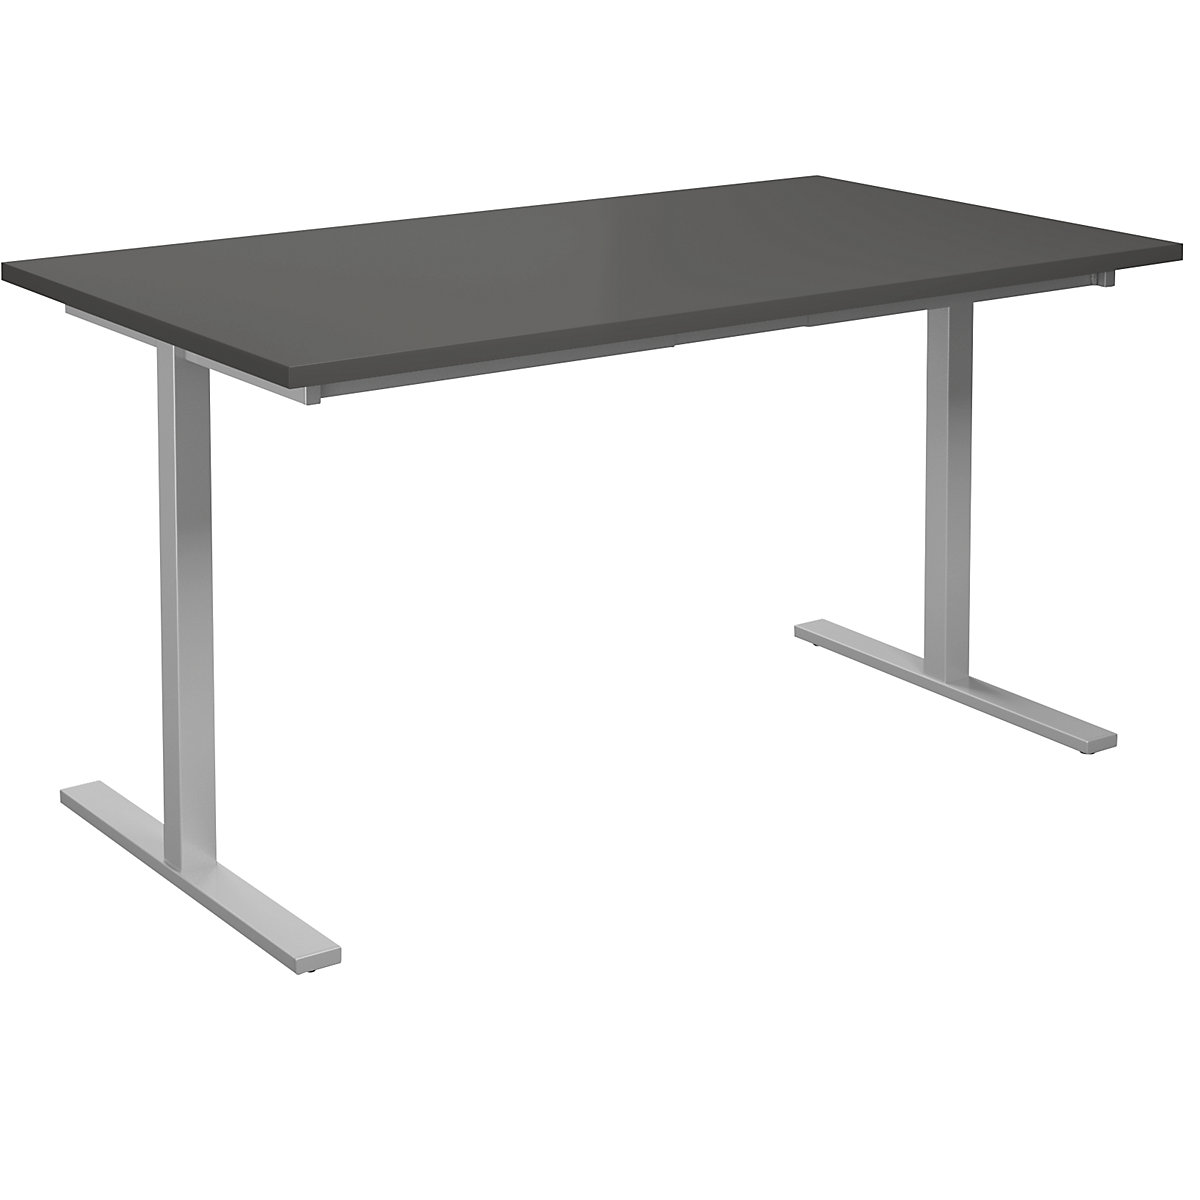 DUO-T multi-purpose desk, straight tabletop, WxD 1400 x 800 mm, dark grey, silver-6